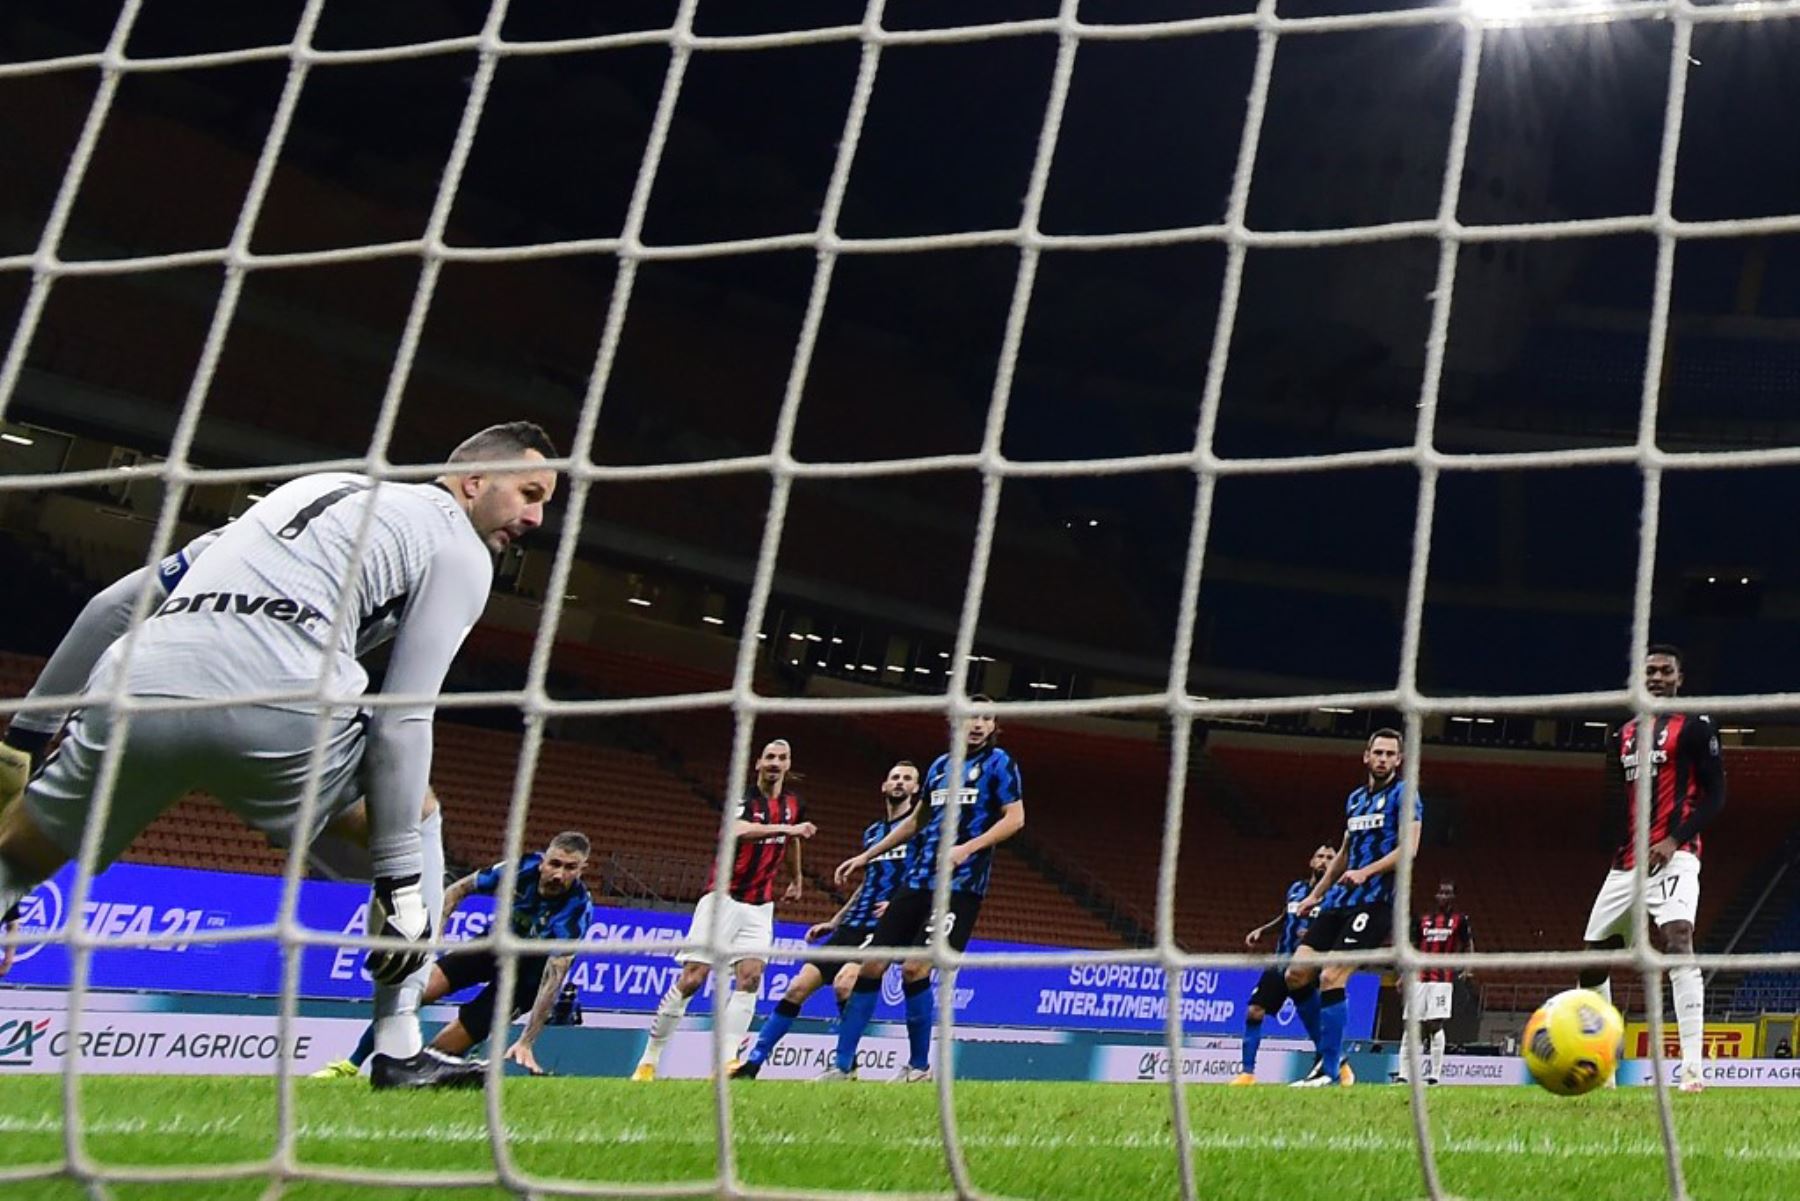 El delantero sueco del AC Milan Zlatan Ibrahimovic (C) marca un gol durante los cuartos de final de la Copa de Italia de fútbol entre el Inter de Milán y el AC Milan. Foto: AFP